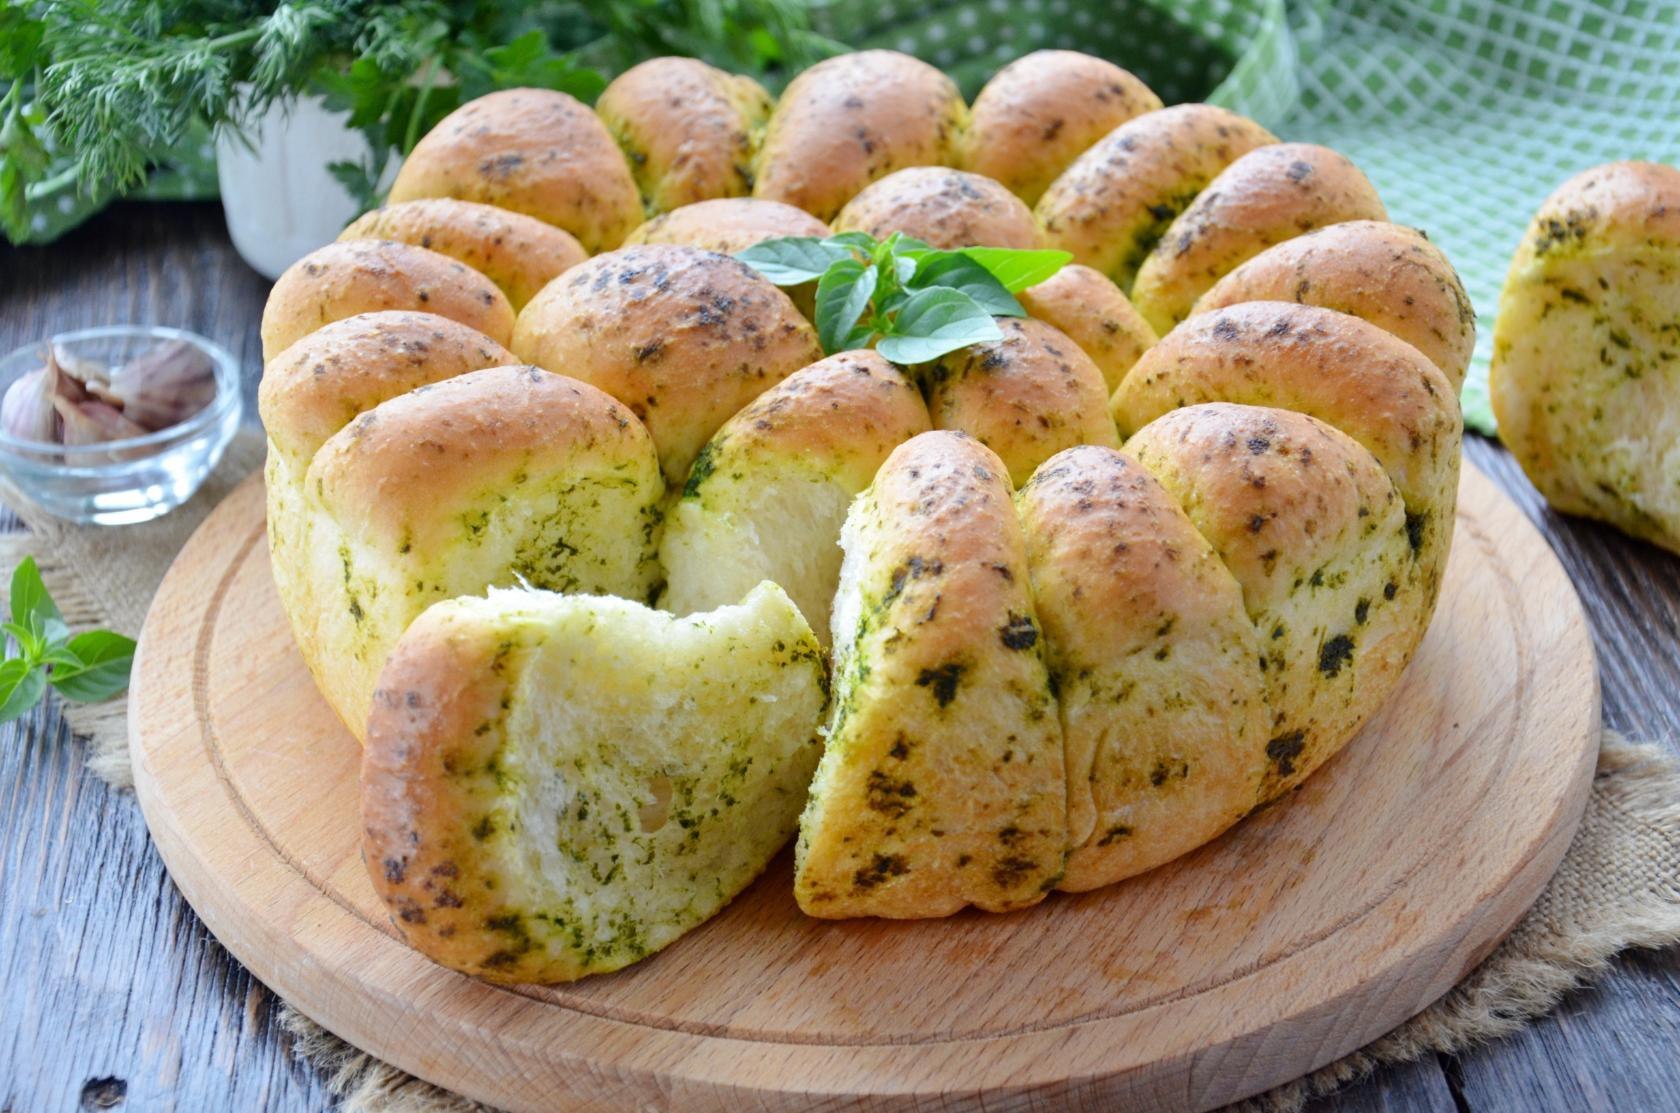 Булочки на дрожжах на сковороде. Хлеб с чесноком и зеленью. Булочки с чесноком и зеленью. Деревенская выпечка. Чесночный хлеб с зеленью.